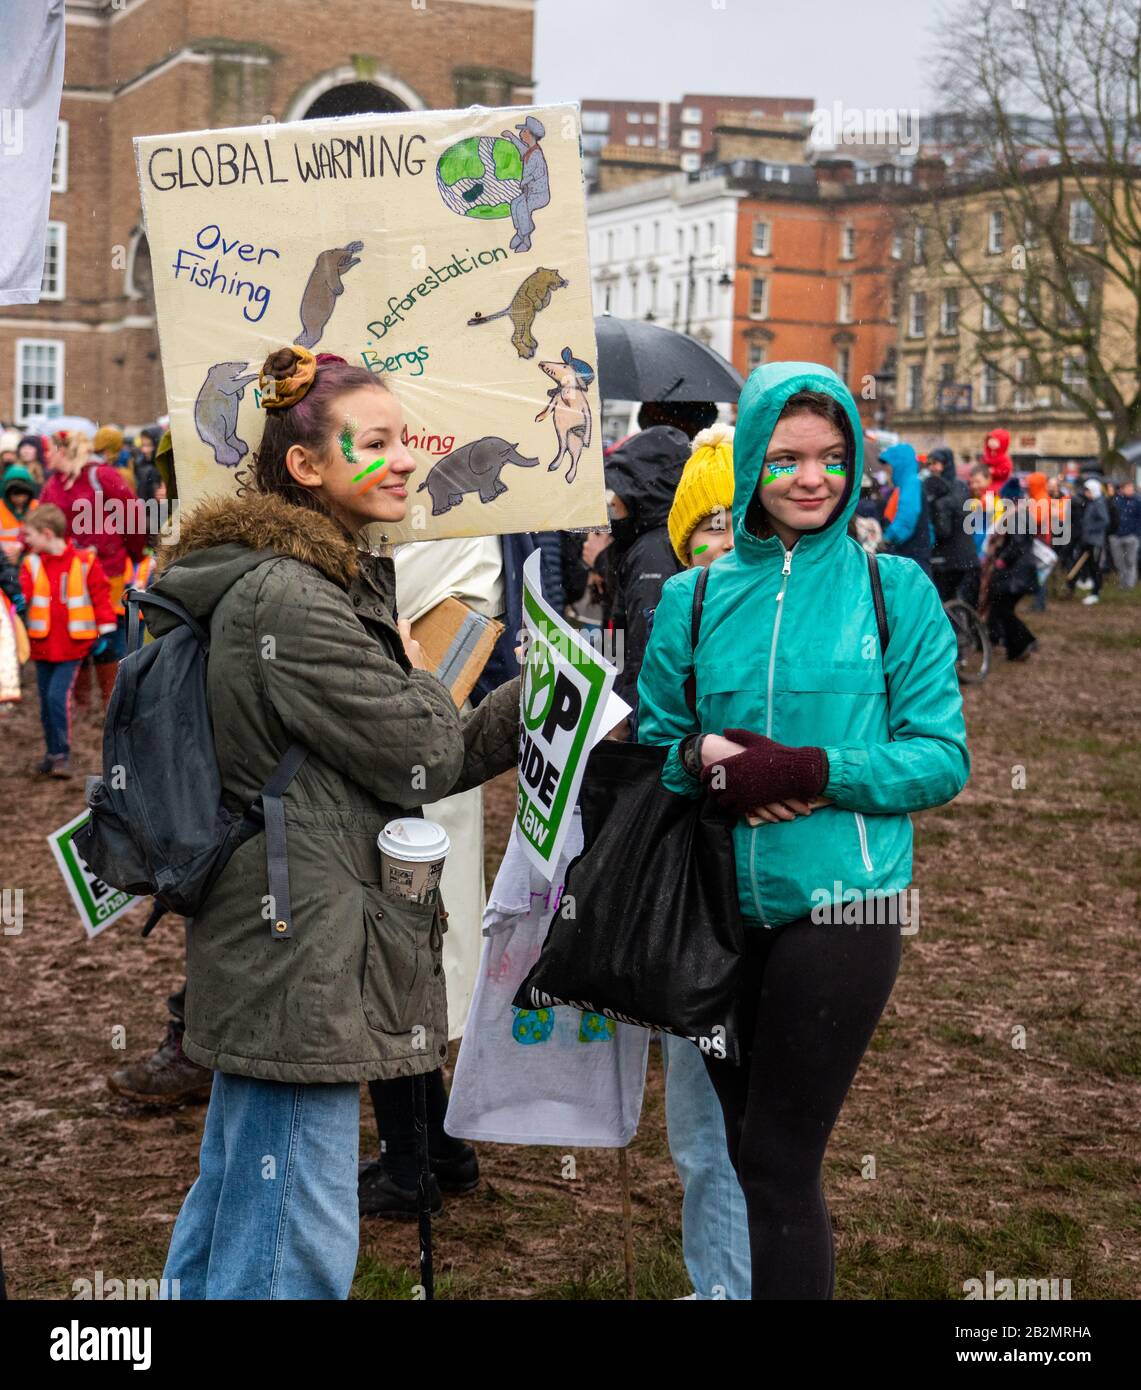 Junge Studenten beim "March for Climate and School Strike" in Bristol UK am 28. Februar 2020, nachdem sie Greta Thumberg auf College Green gesprochen haben Stockfoto